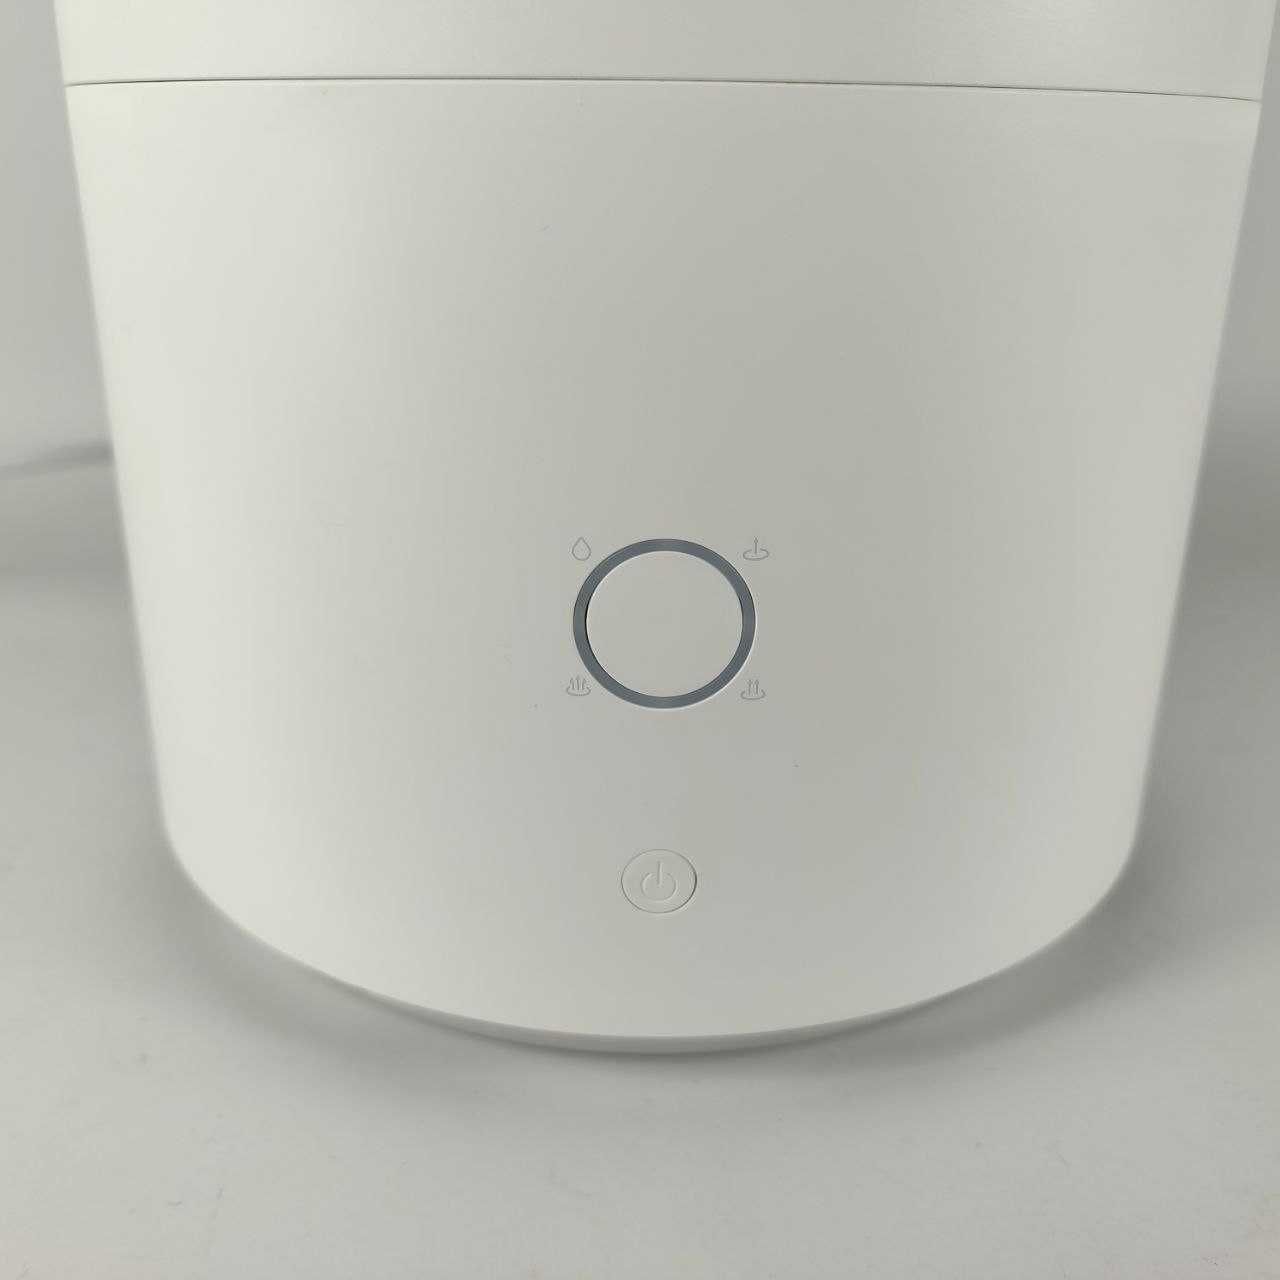 Увлажнитель Mi Smart Antibacterial Humidifier под ремонт/запчасти